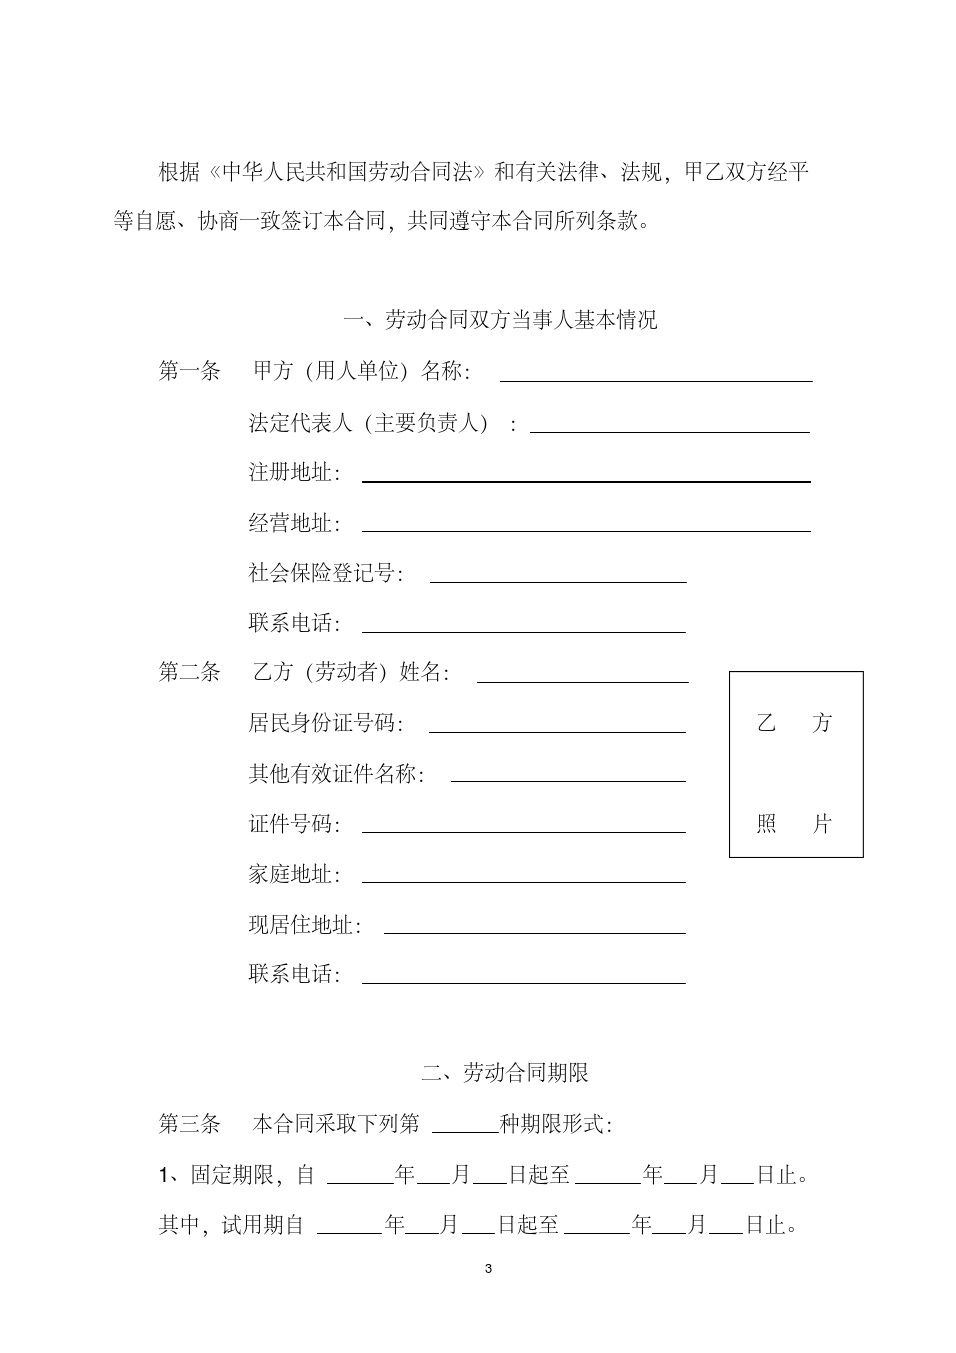 劳动合同书(太原市劳动局监印).pdf